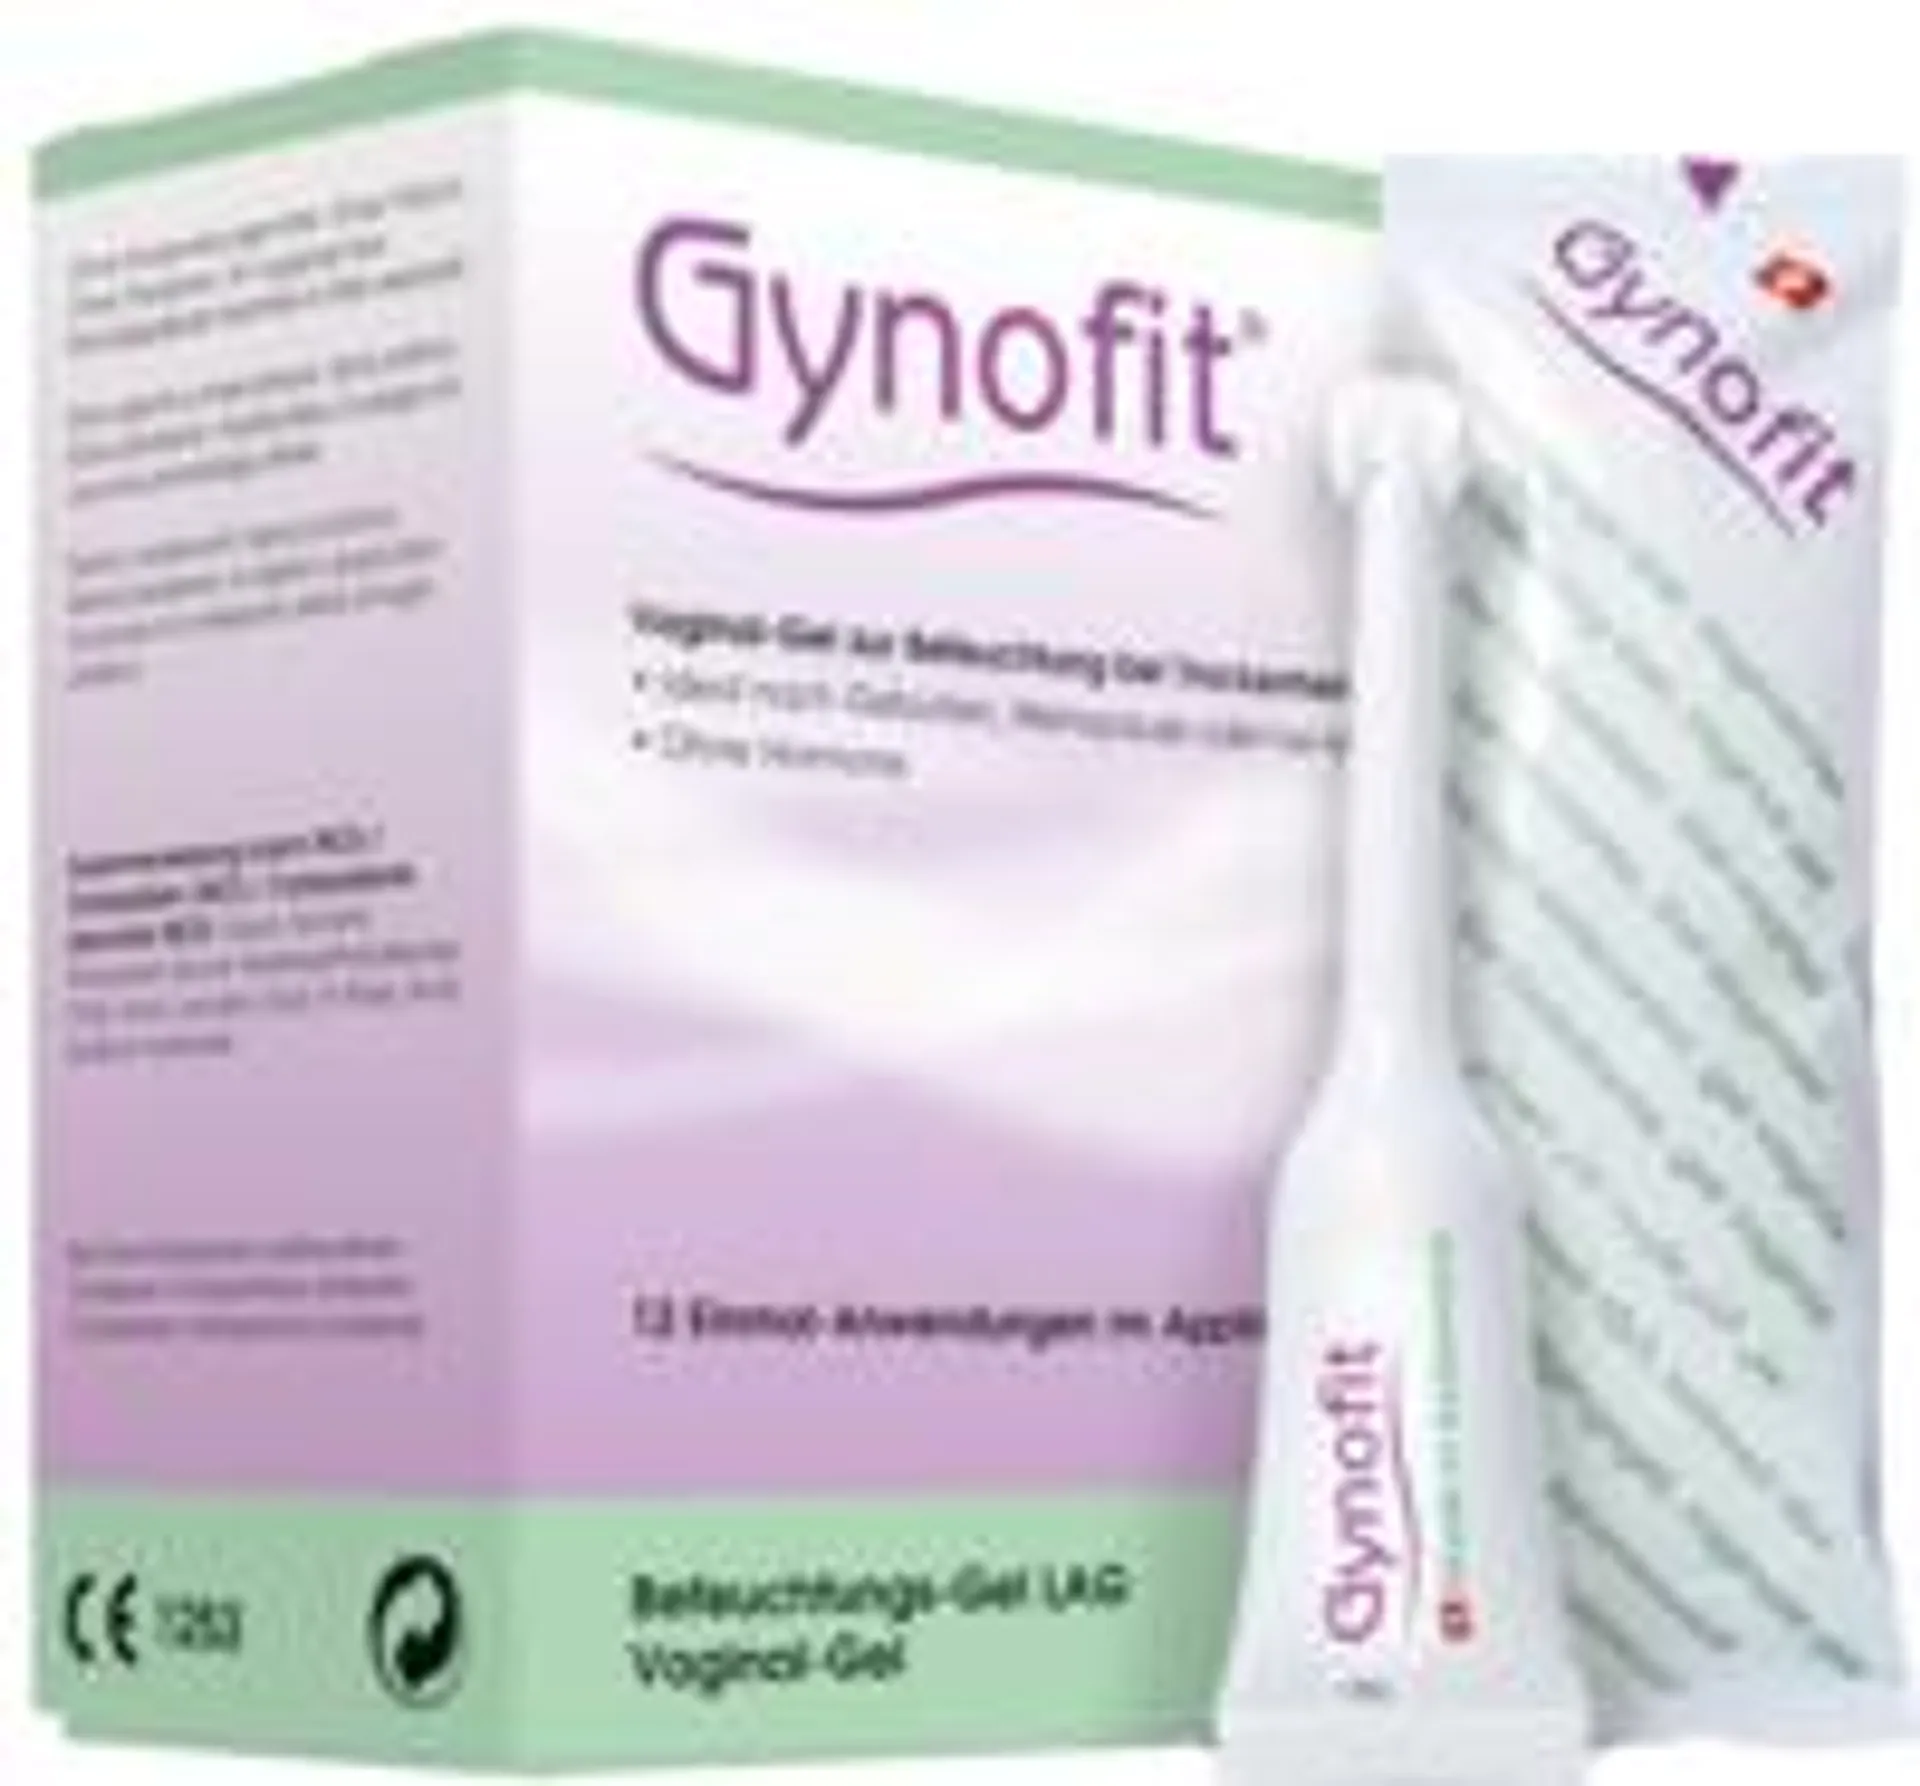 GYNOFIT Vaginal Gel zur Befeuchtung 6X5 ml Gel